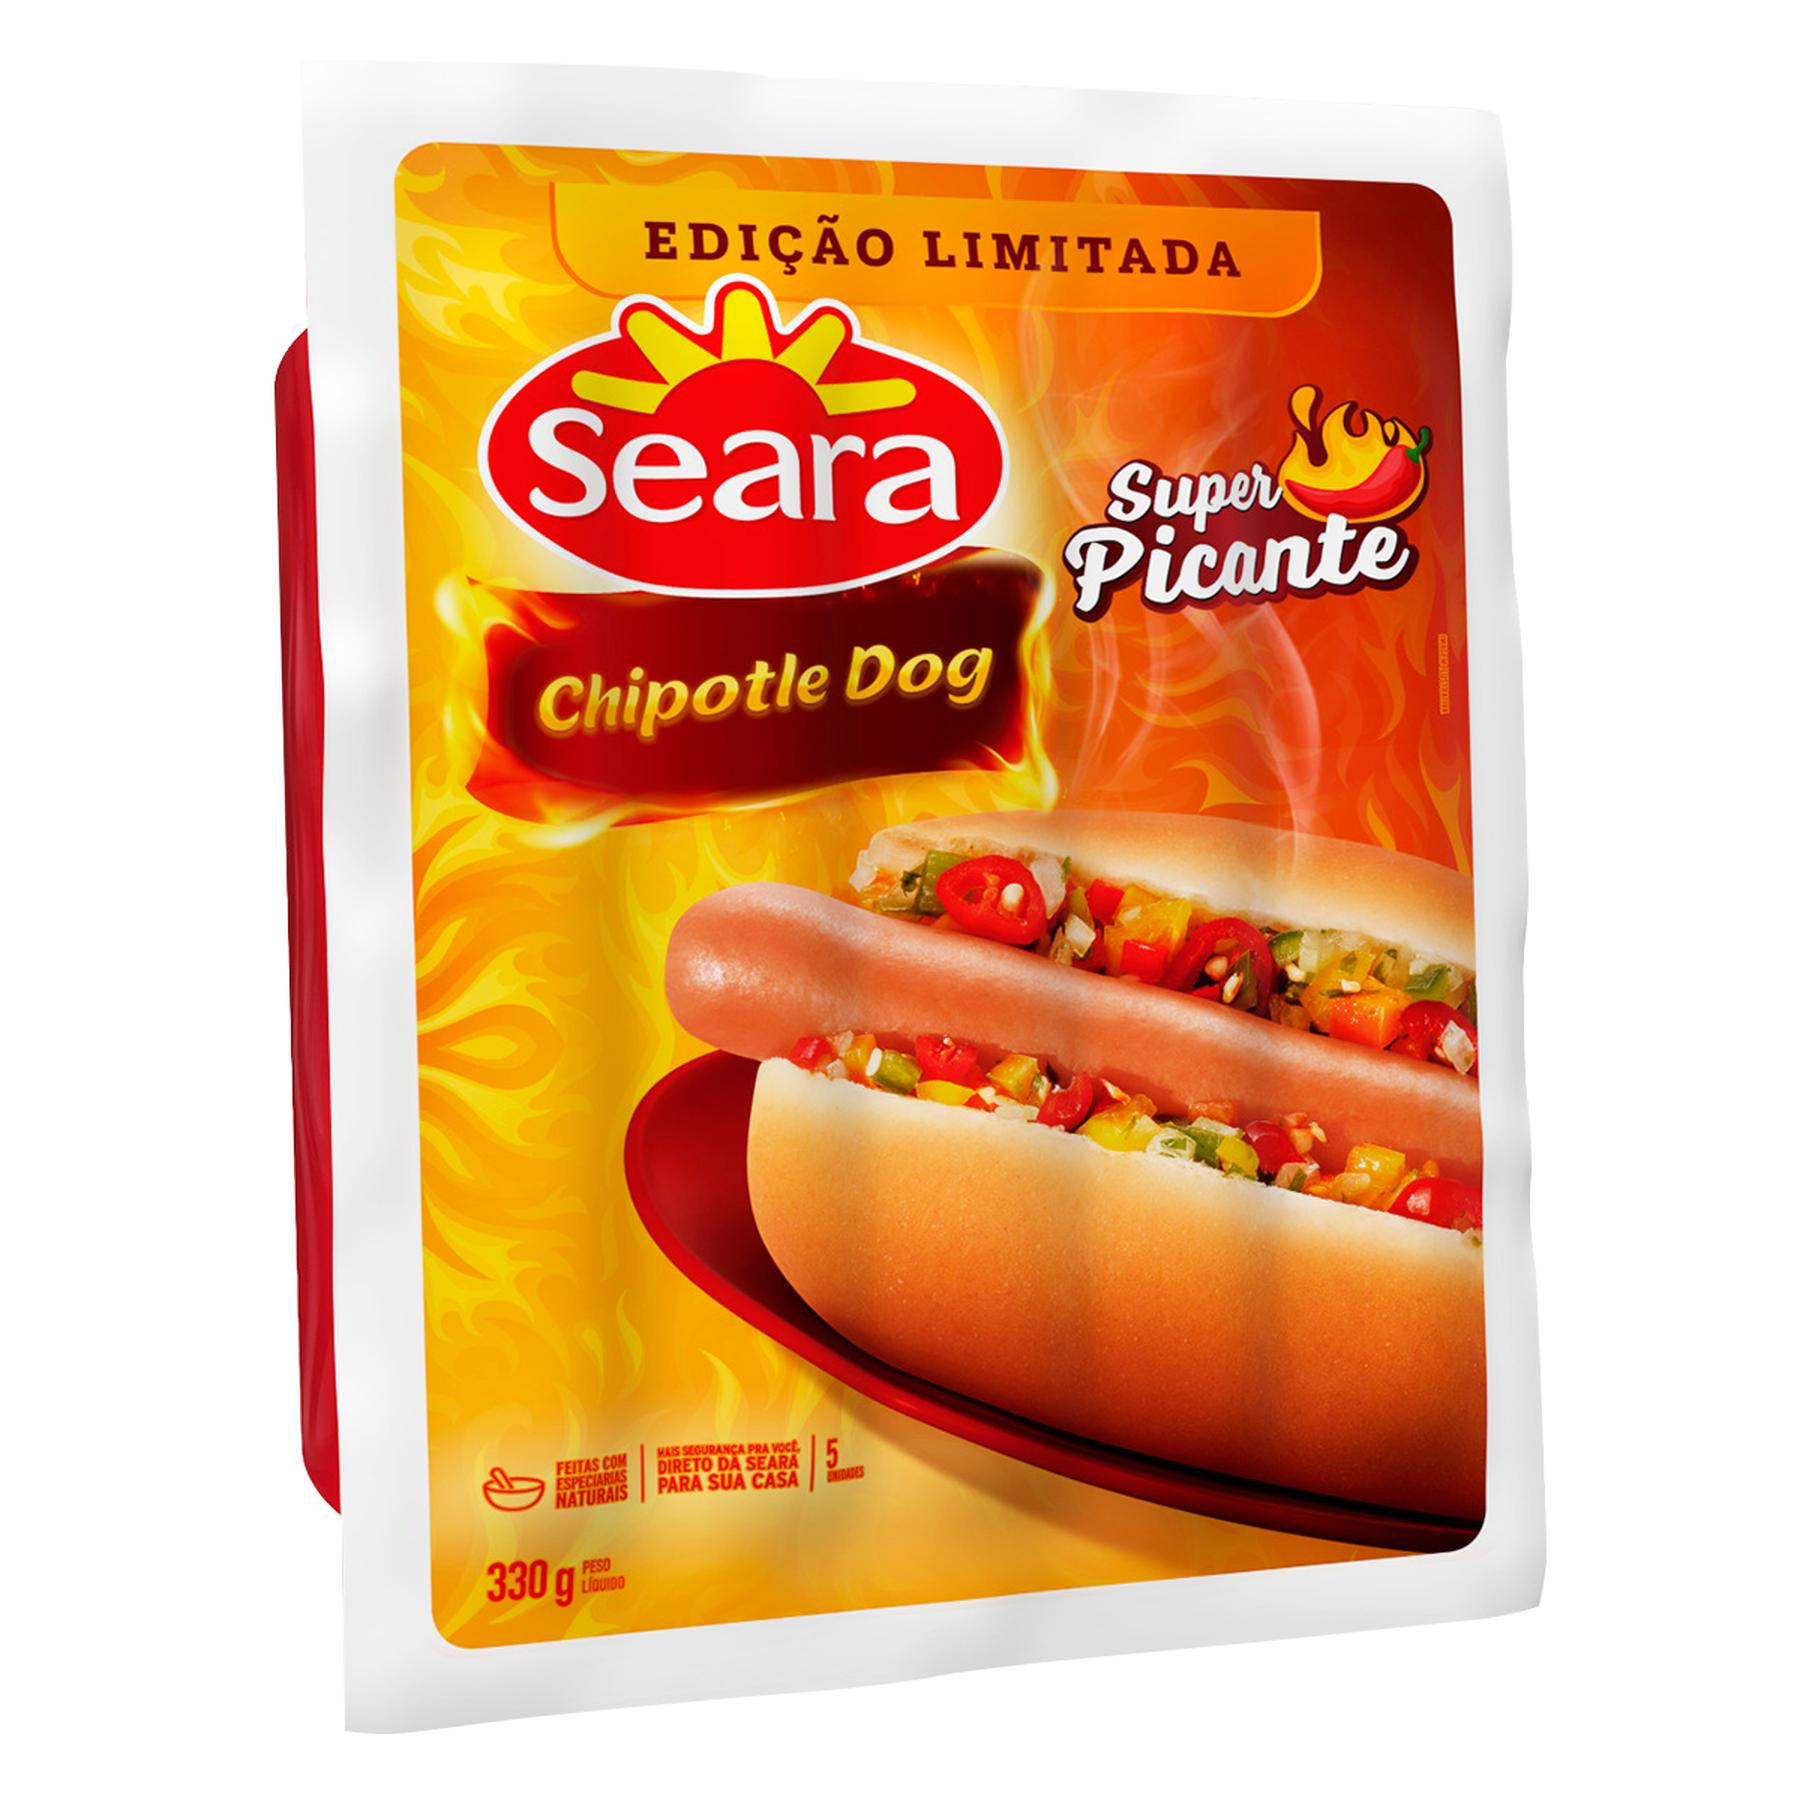 Salsicha Chipotle Dog Super Picante Seara 330g